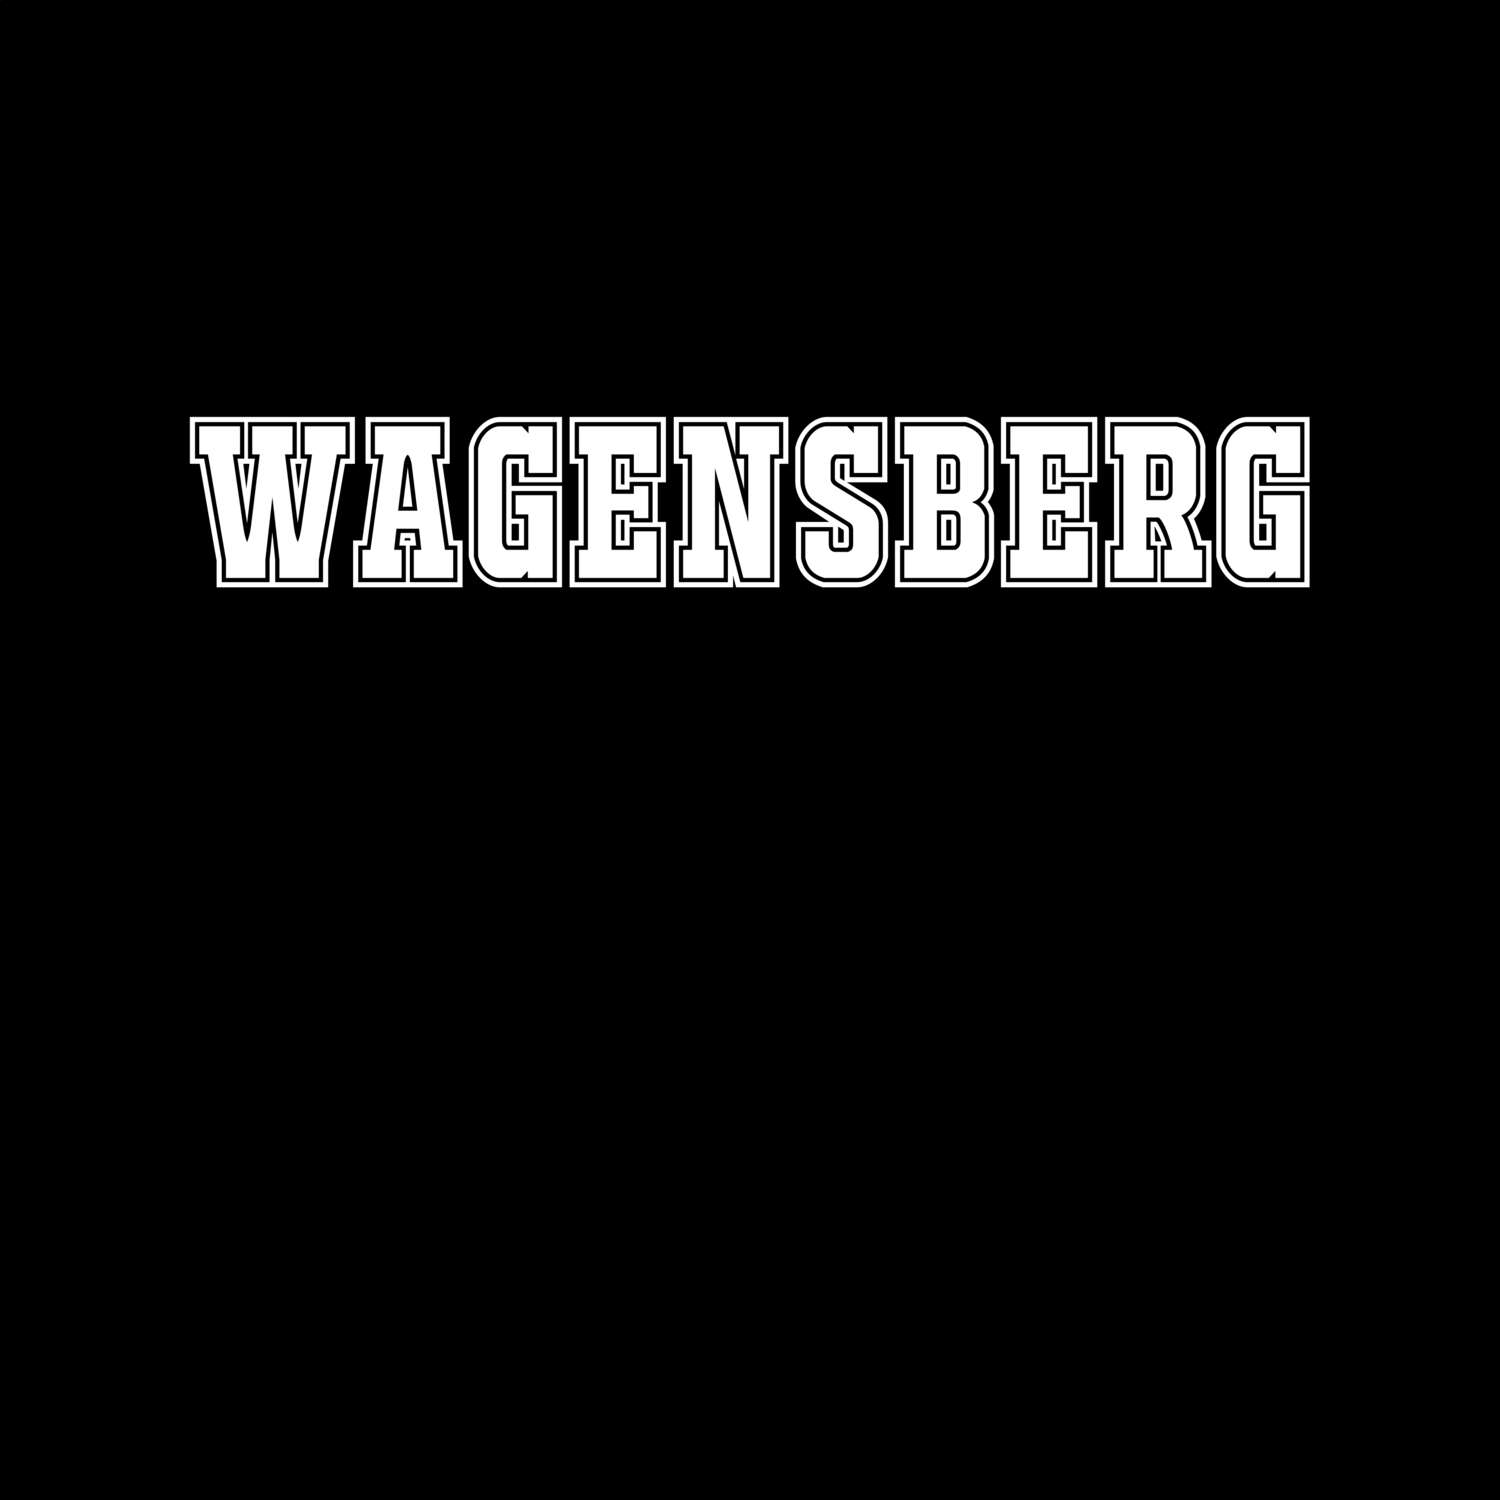 Wagensberg T-Shirt »Classic«